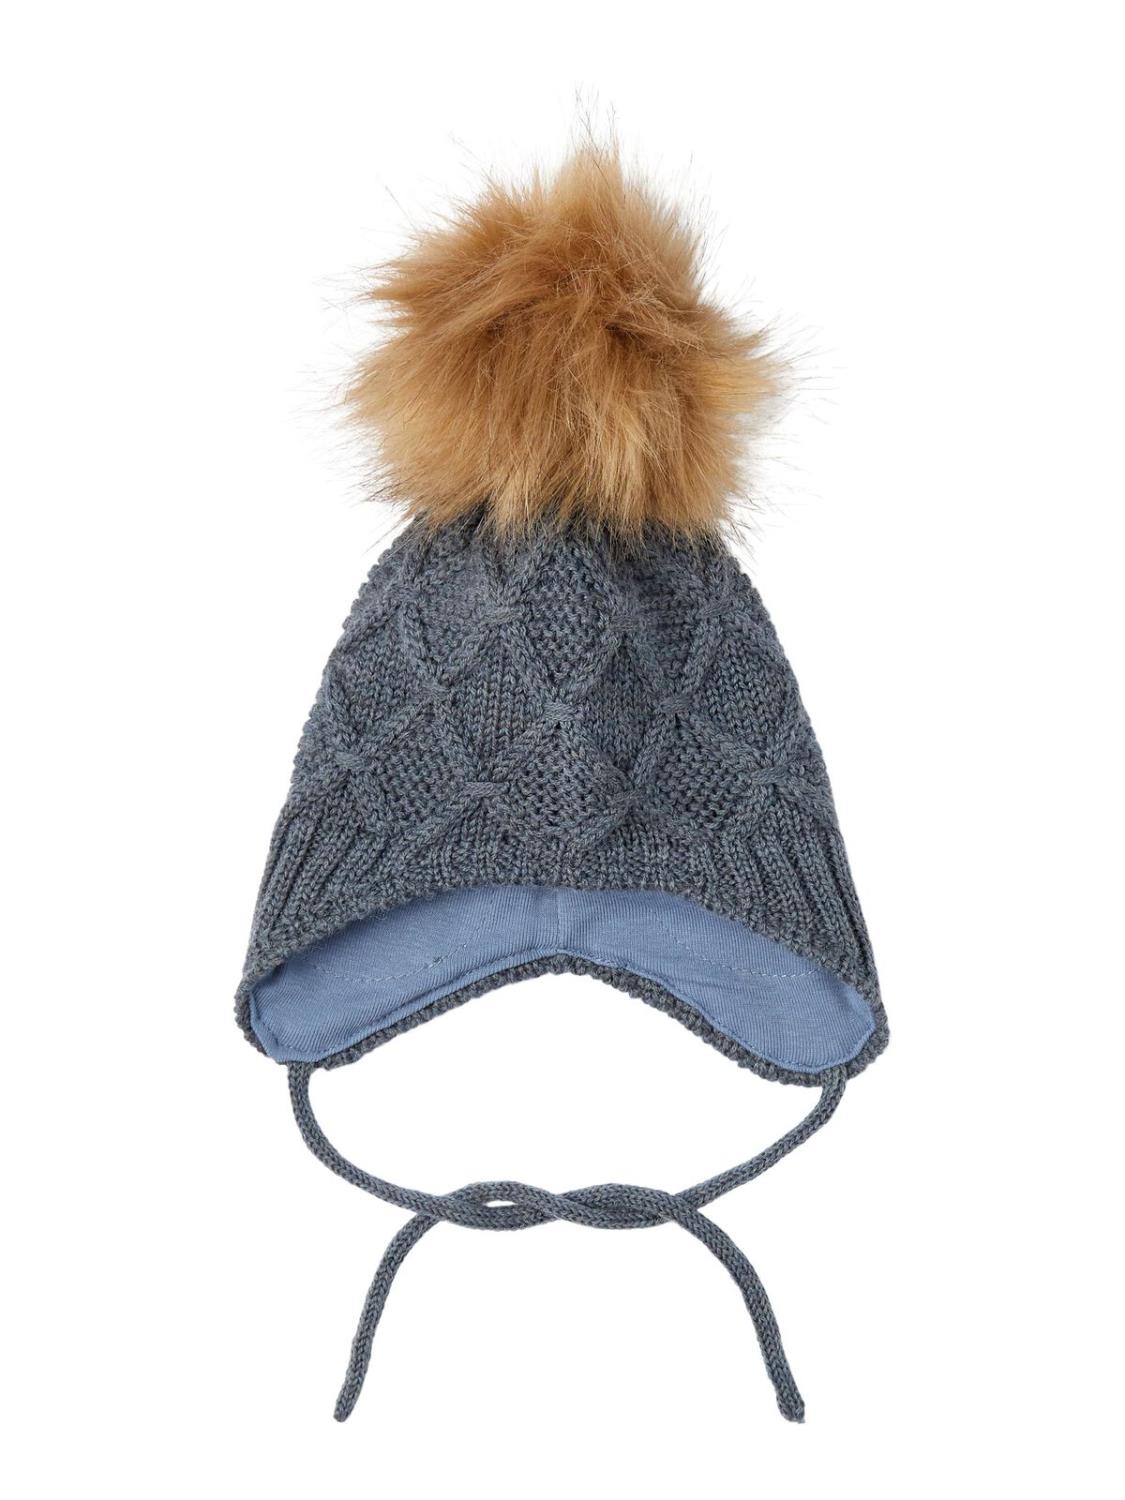 Wrilla Wool Knit Hat - Turbulence